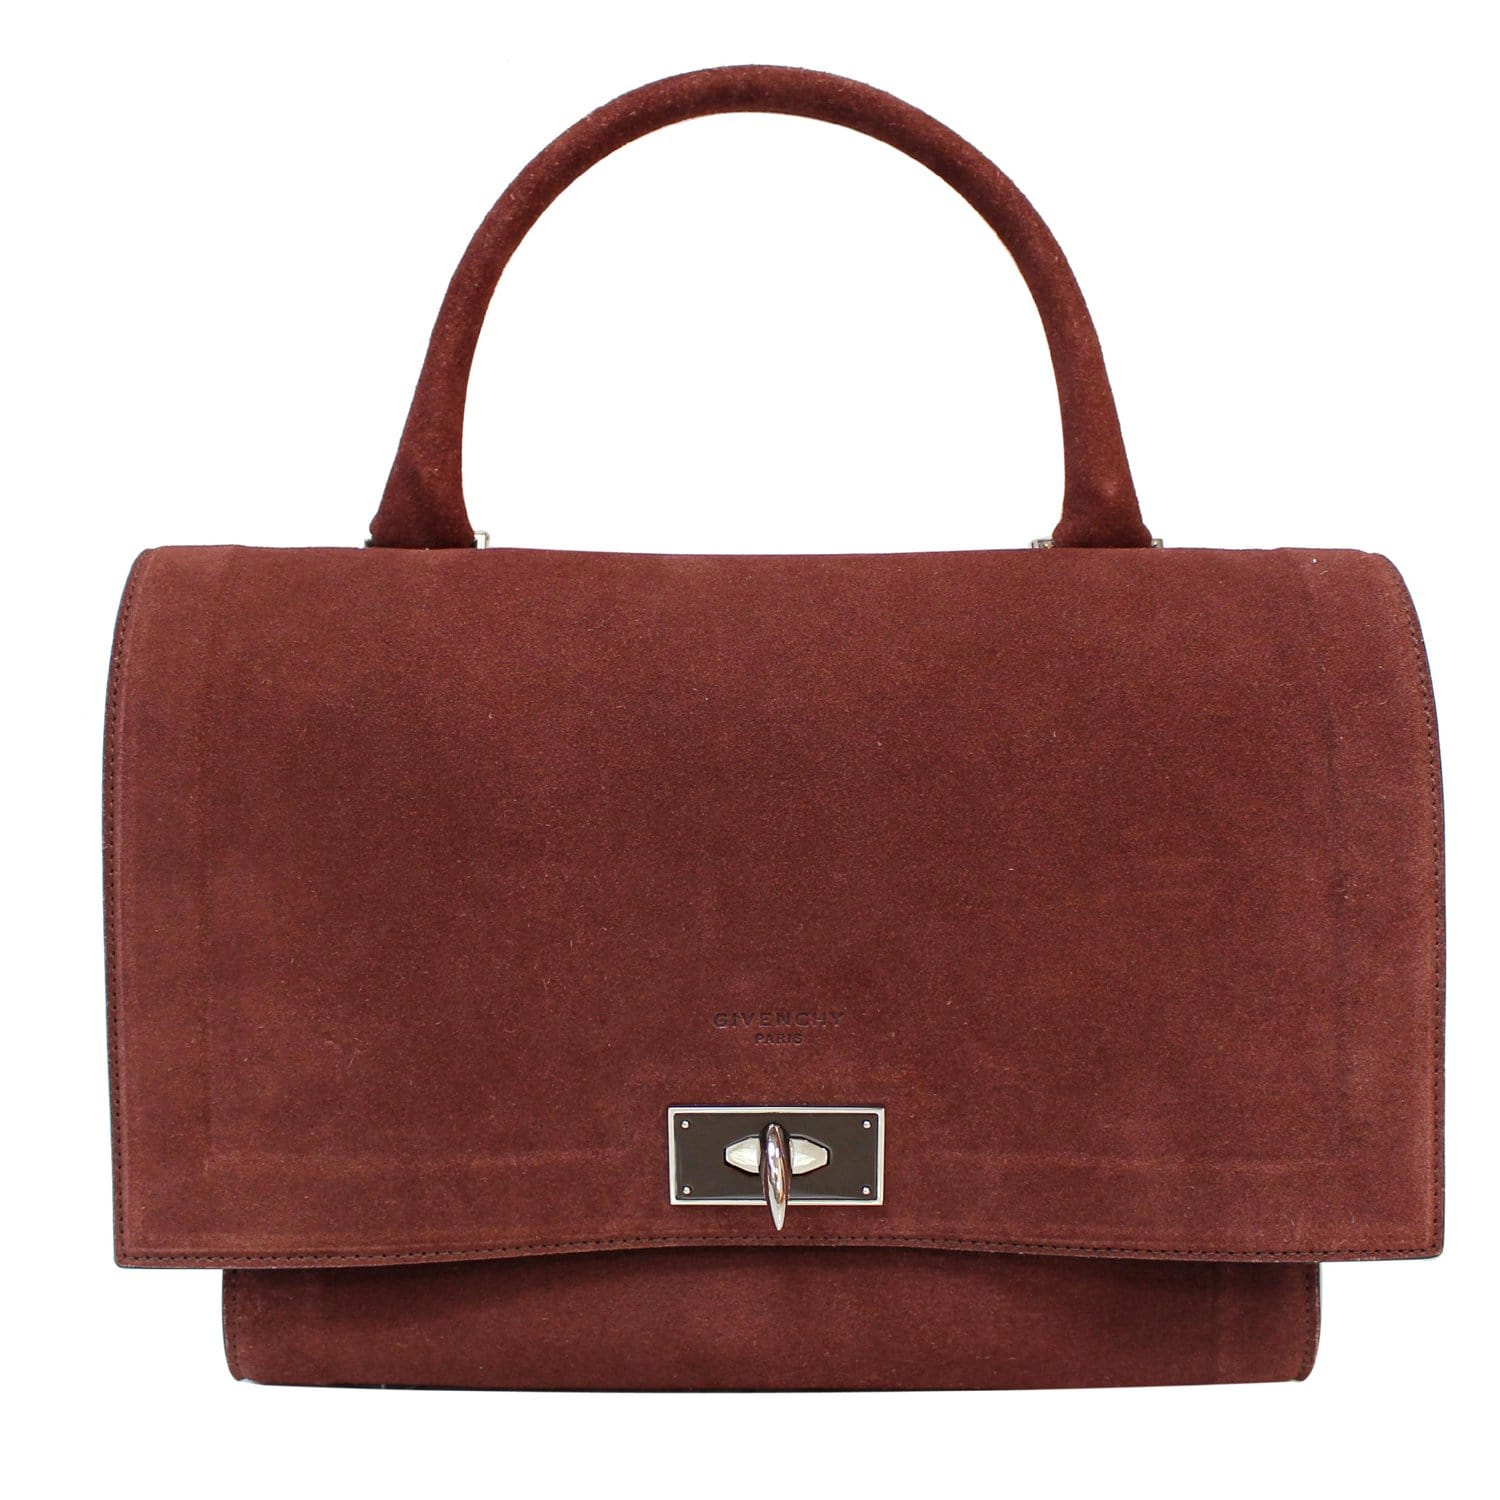 Handbag Givenchy Brown in Suede - 16654057